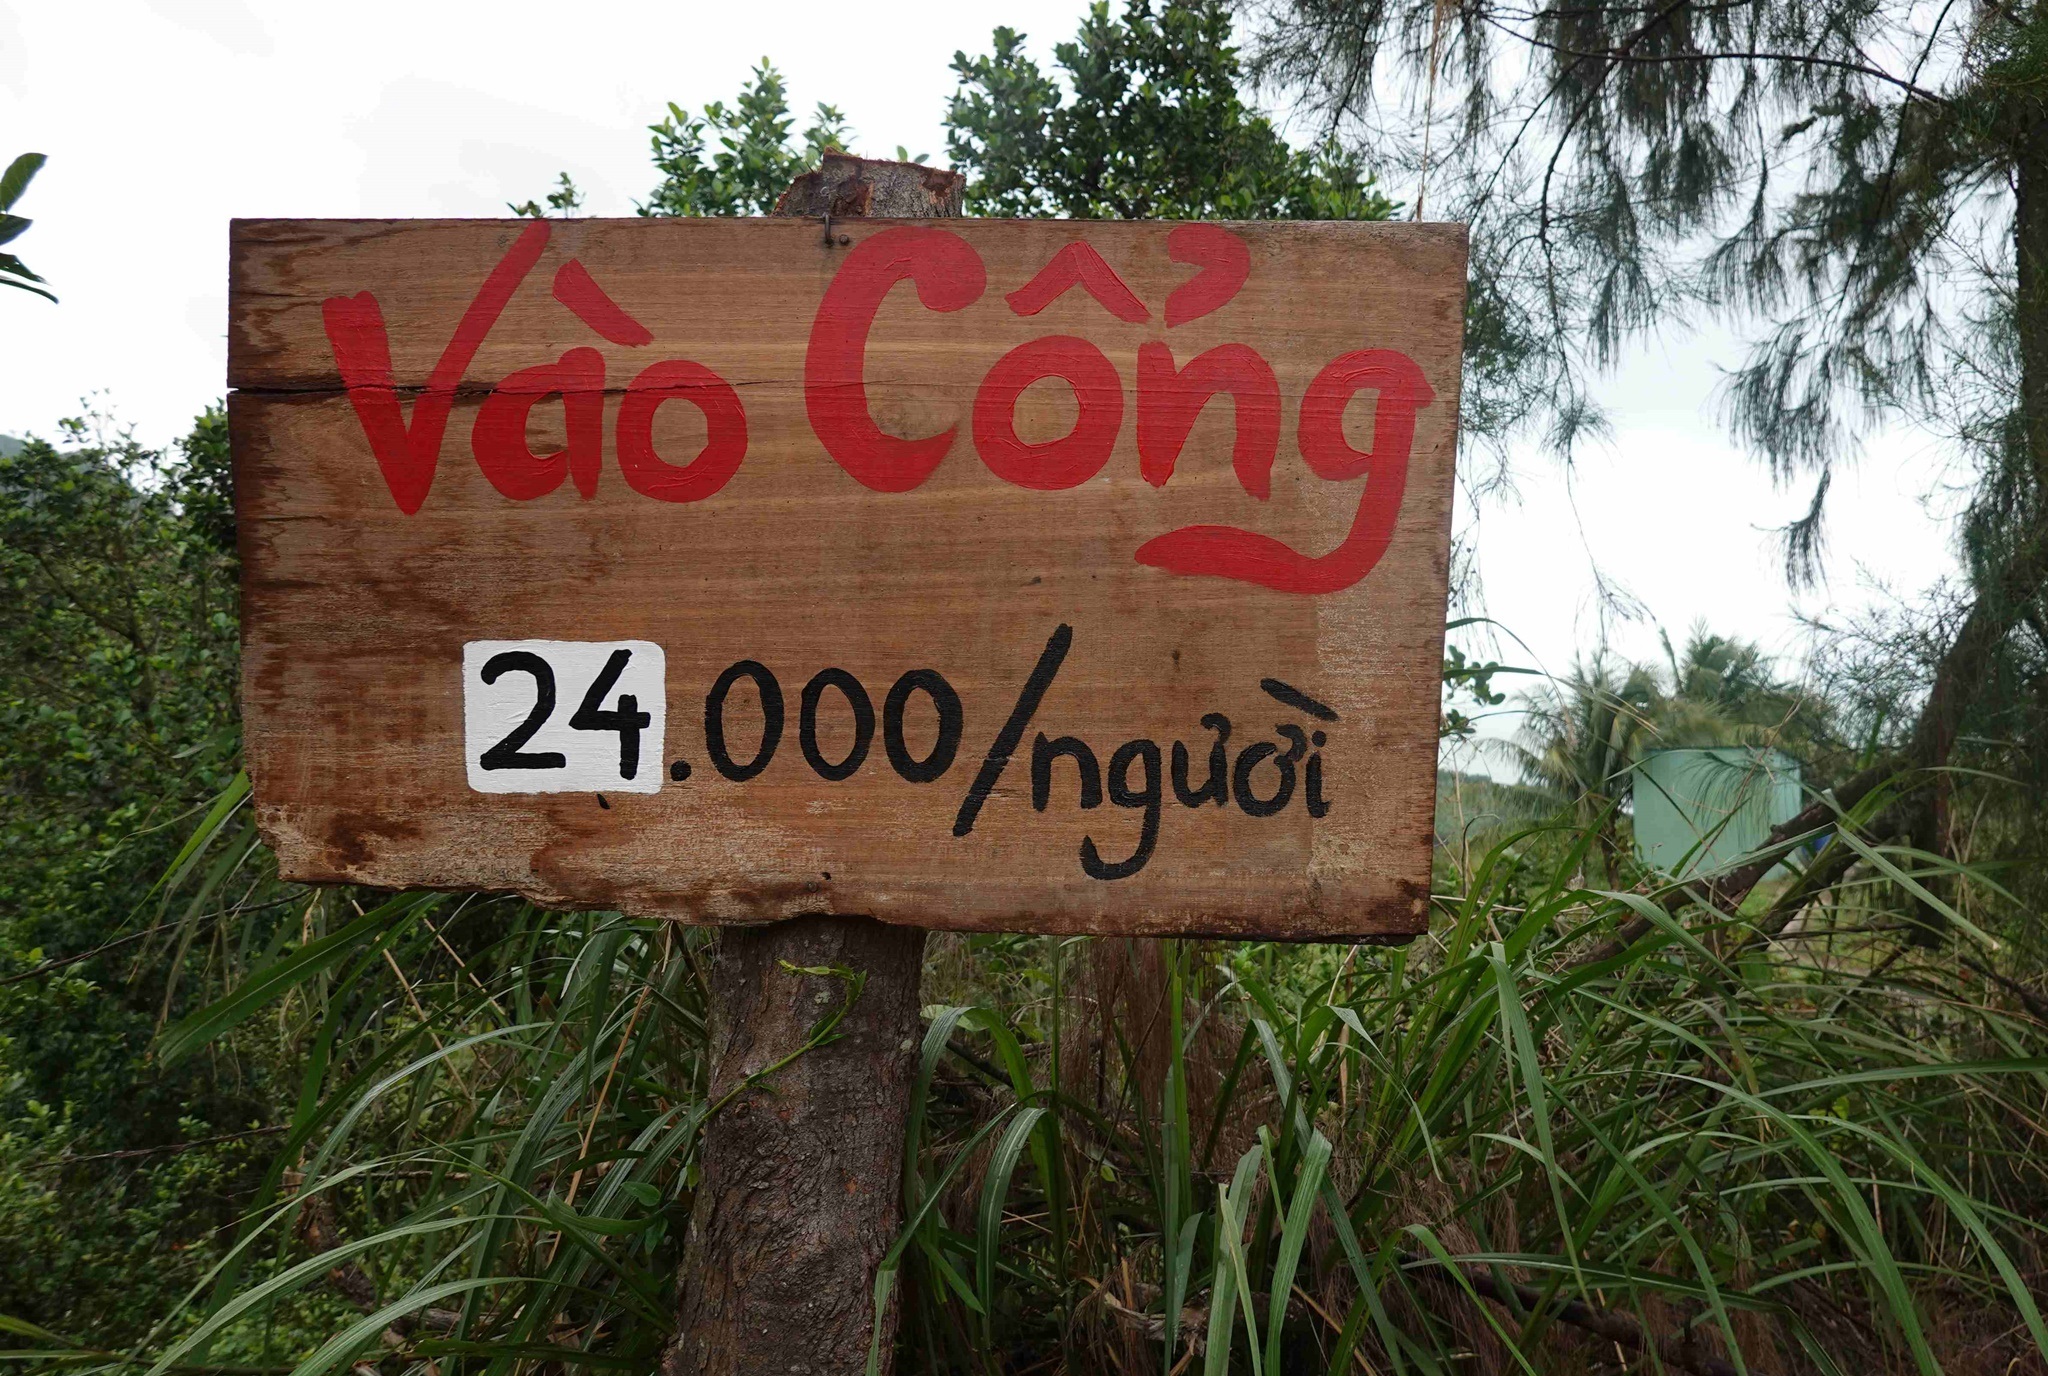 Nhiều điểm du lịch mọc trái phép trên núi ở Quy Nhơn - 3